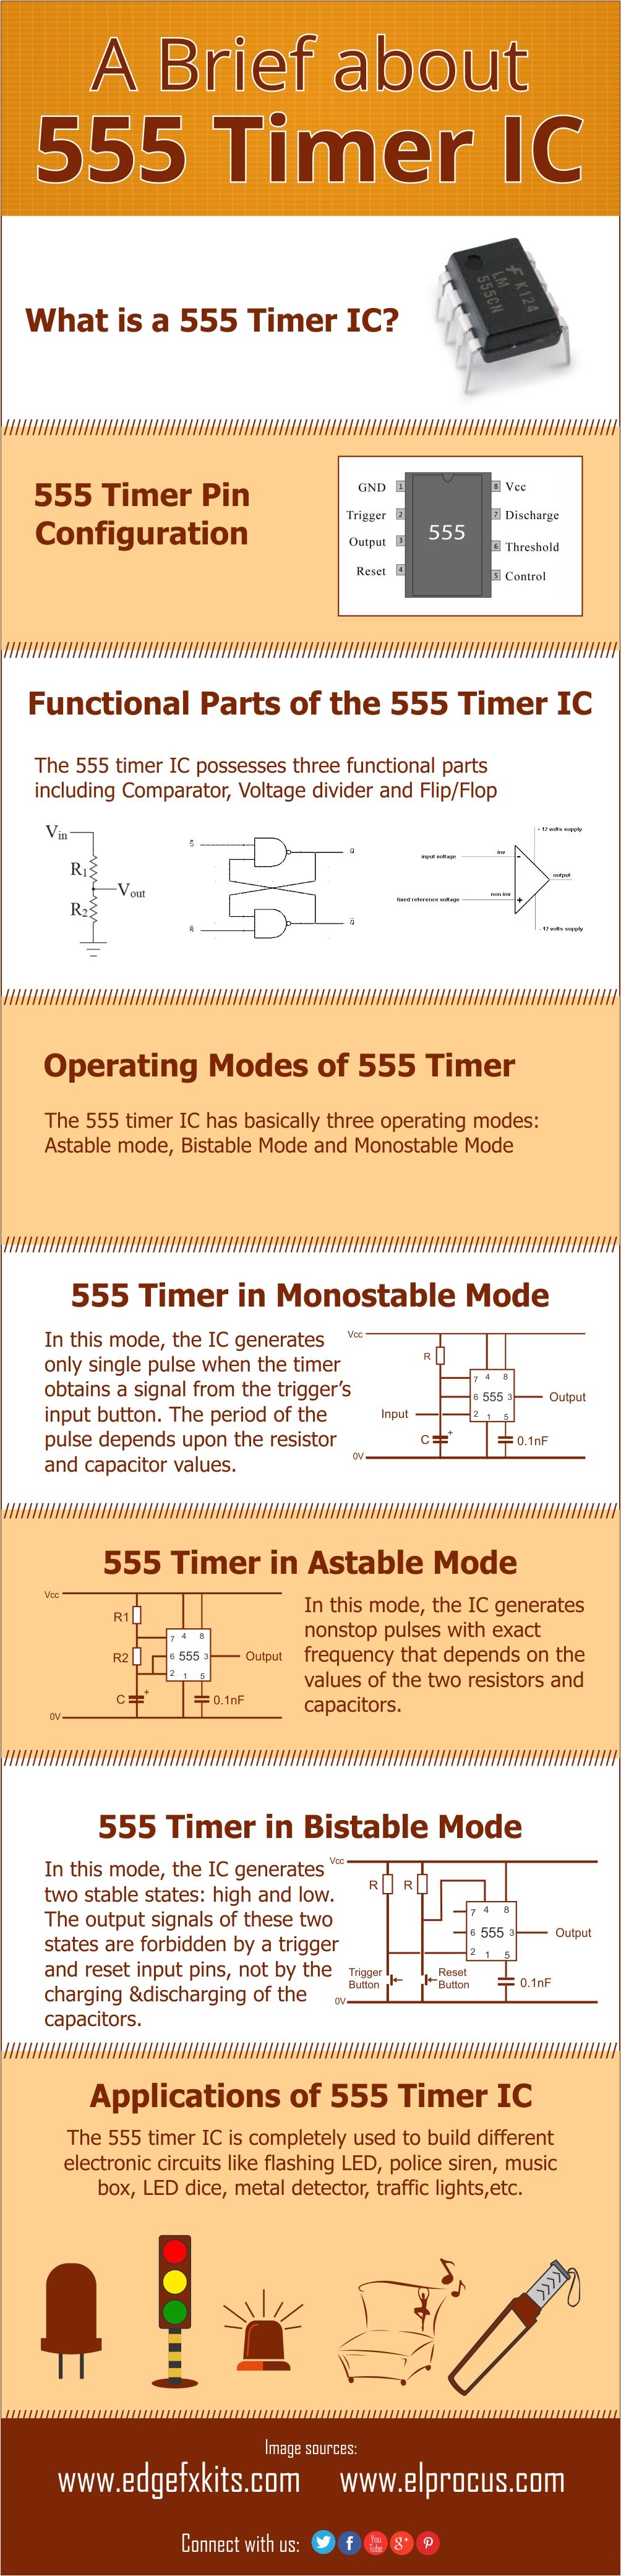 Infographie: Bref sur la minuterie IC 555 et ses applications